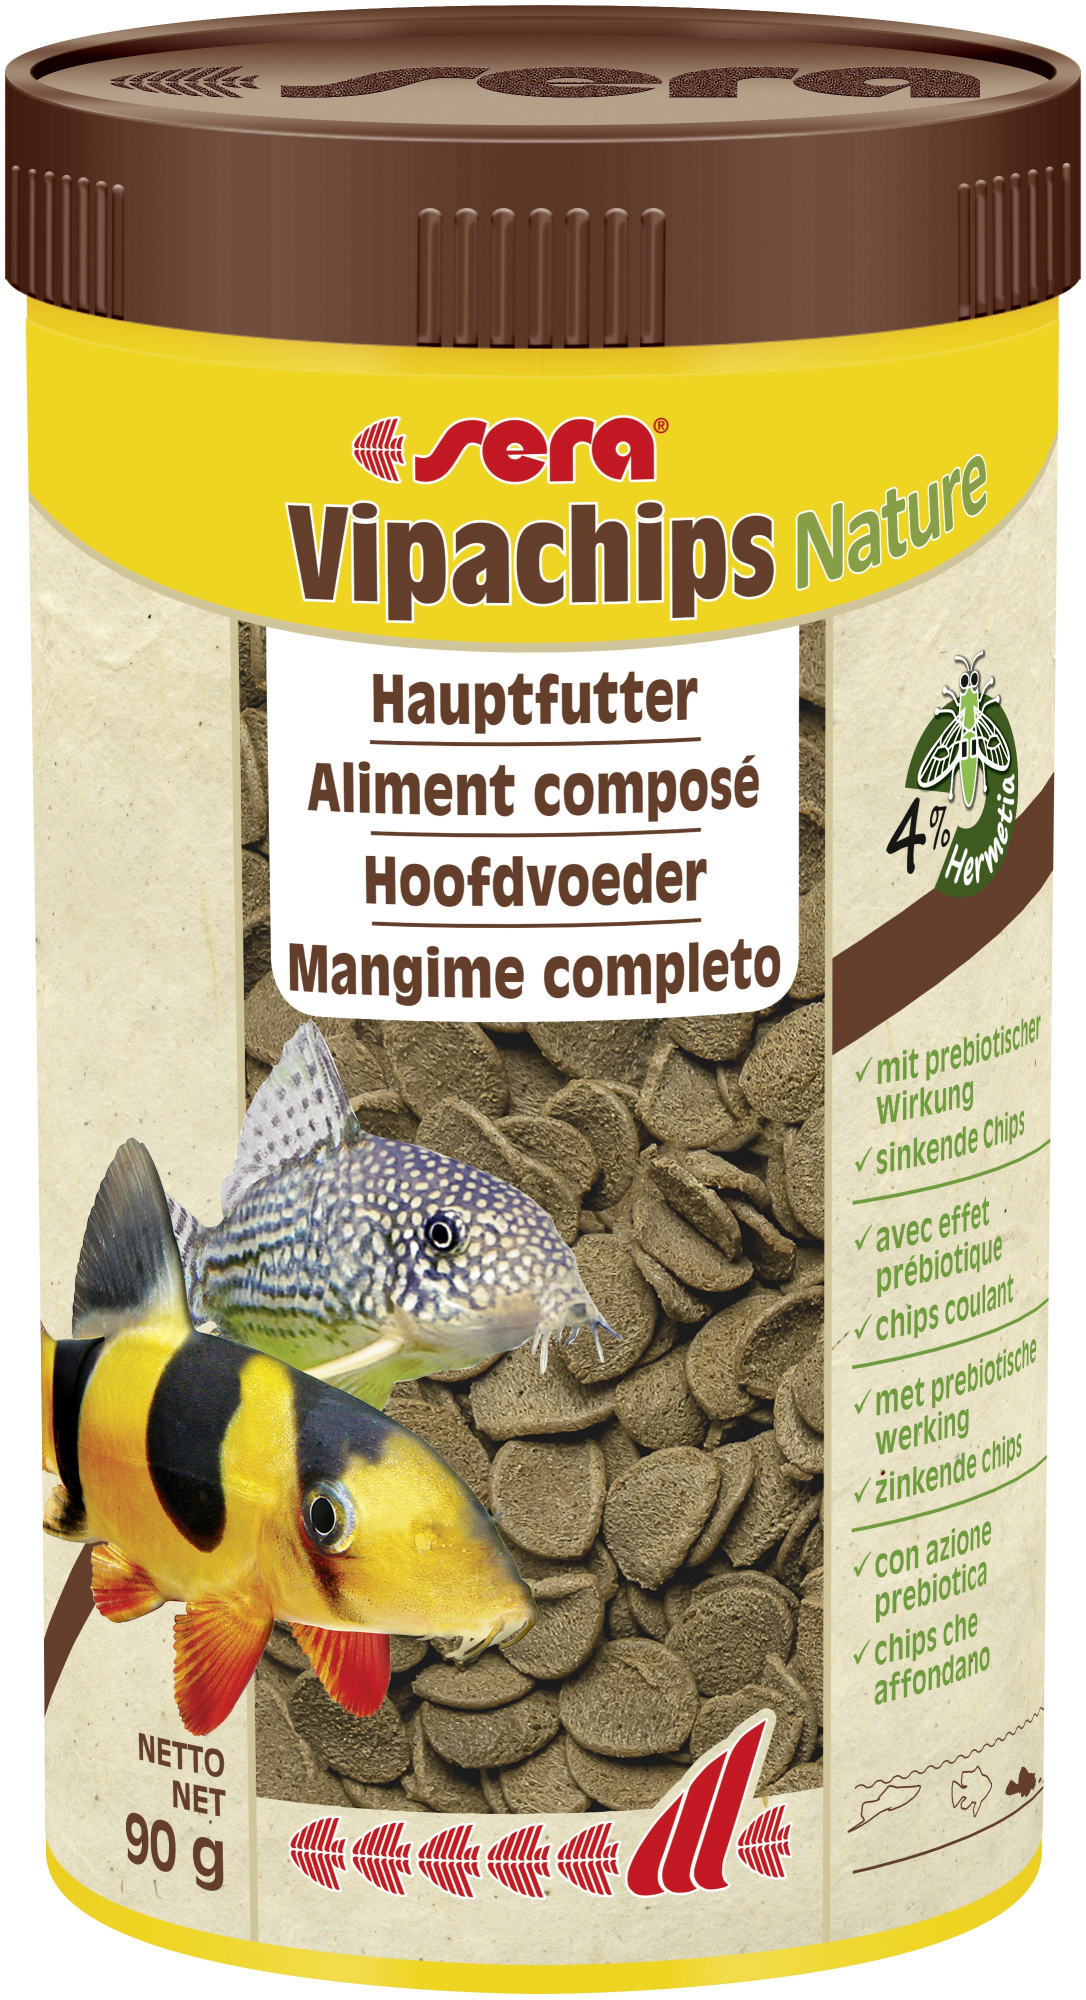 Sera Vipachips Nature Hauptfutter aus Chips für am Boden fressende Fische